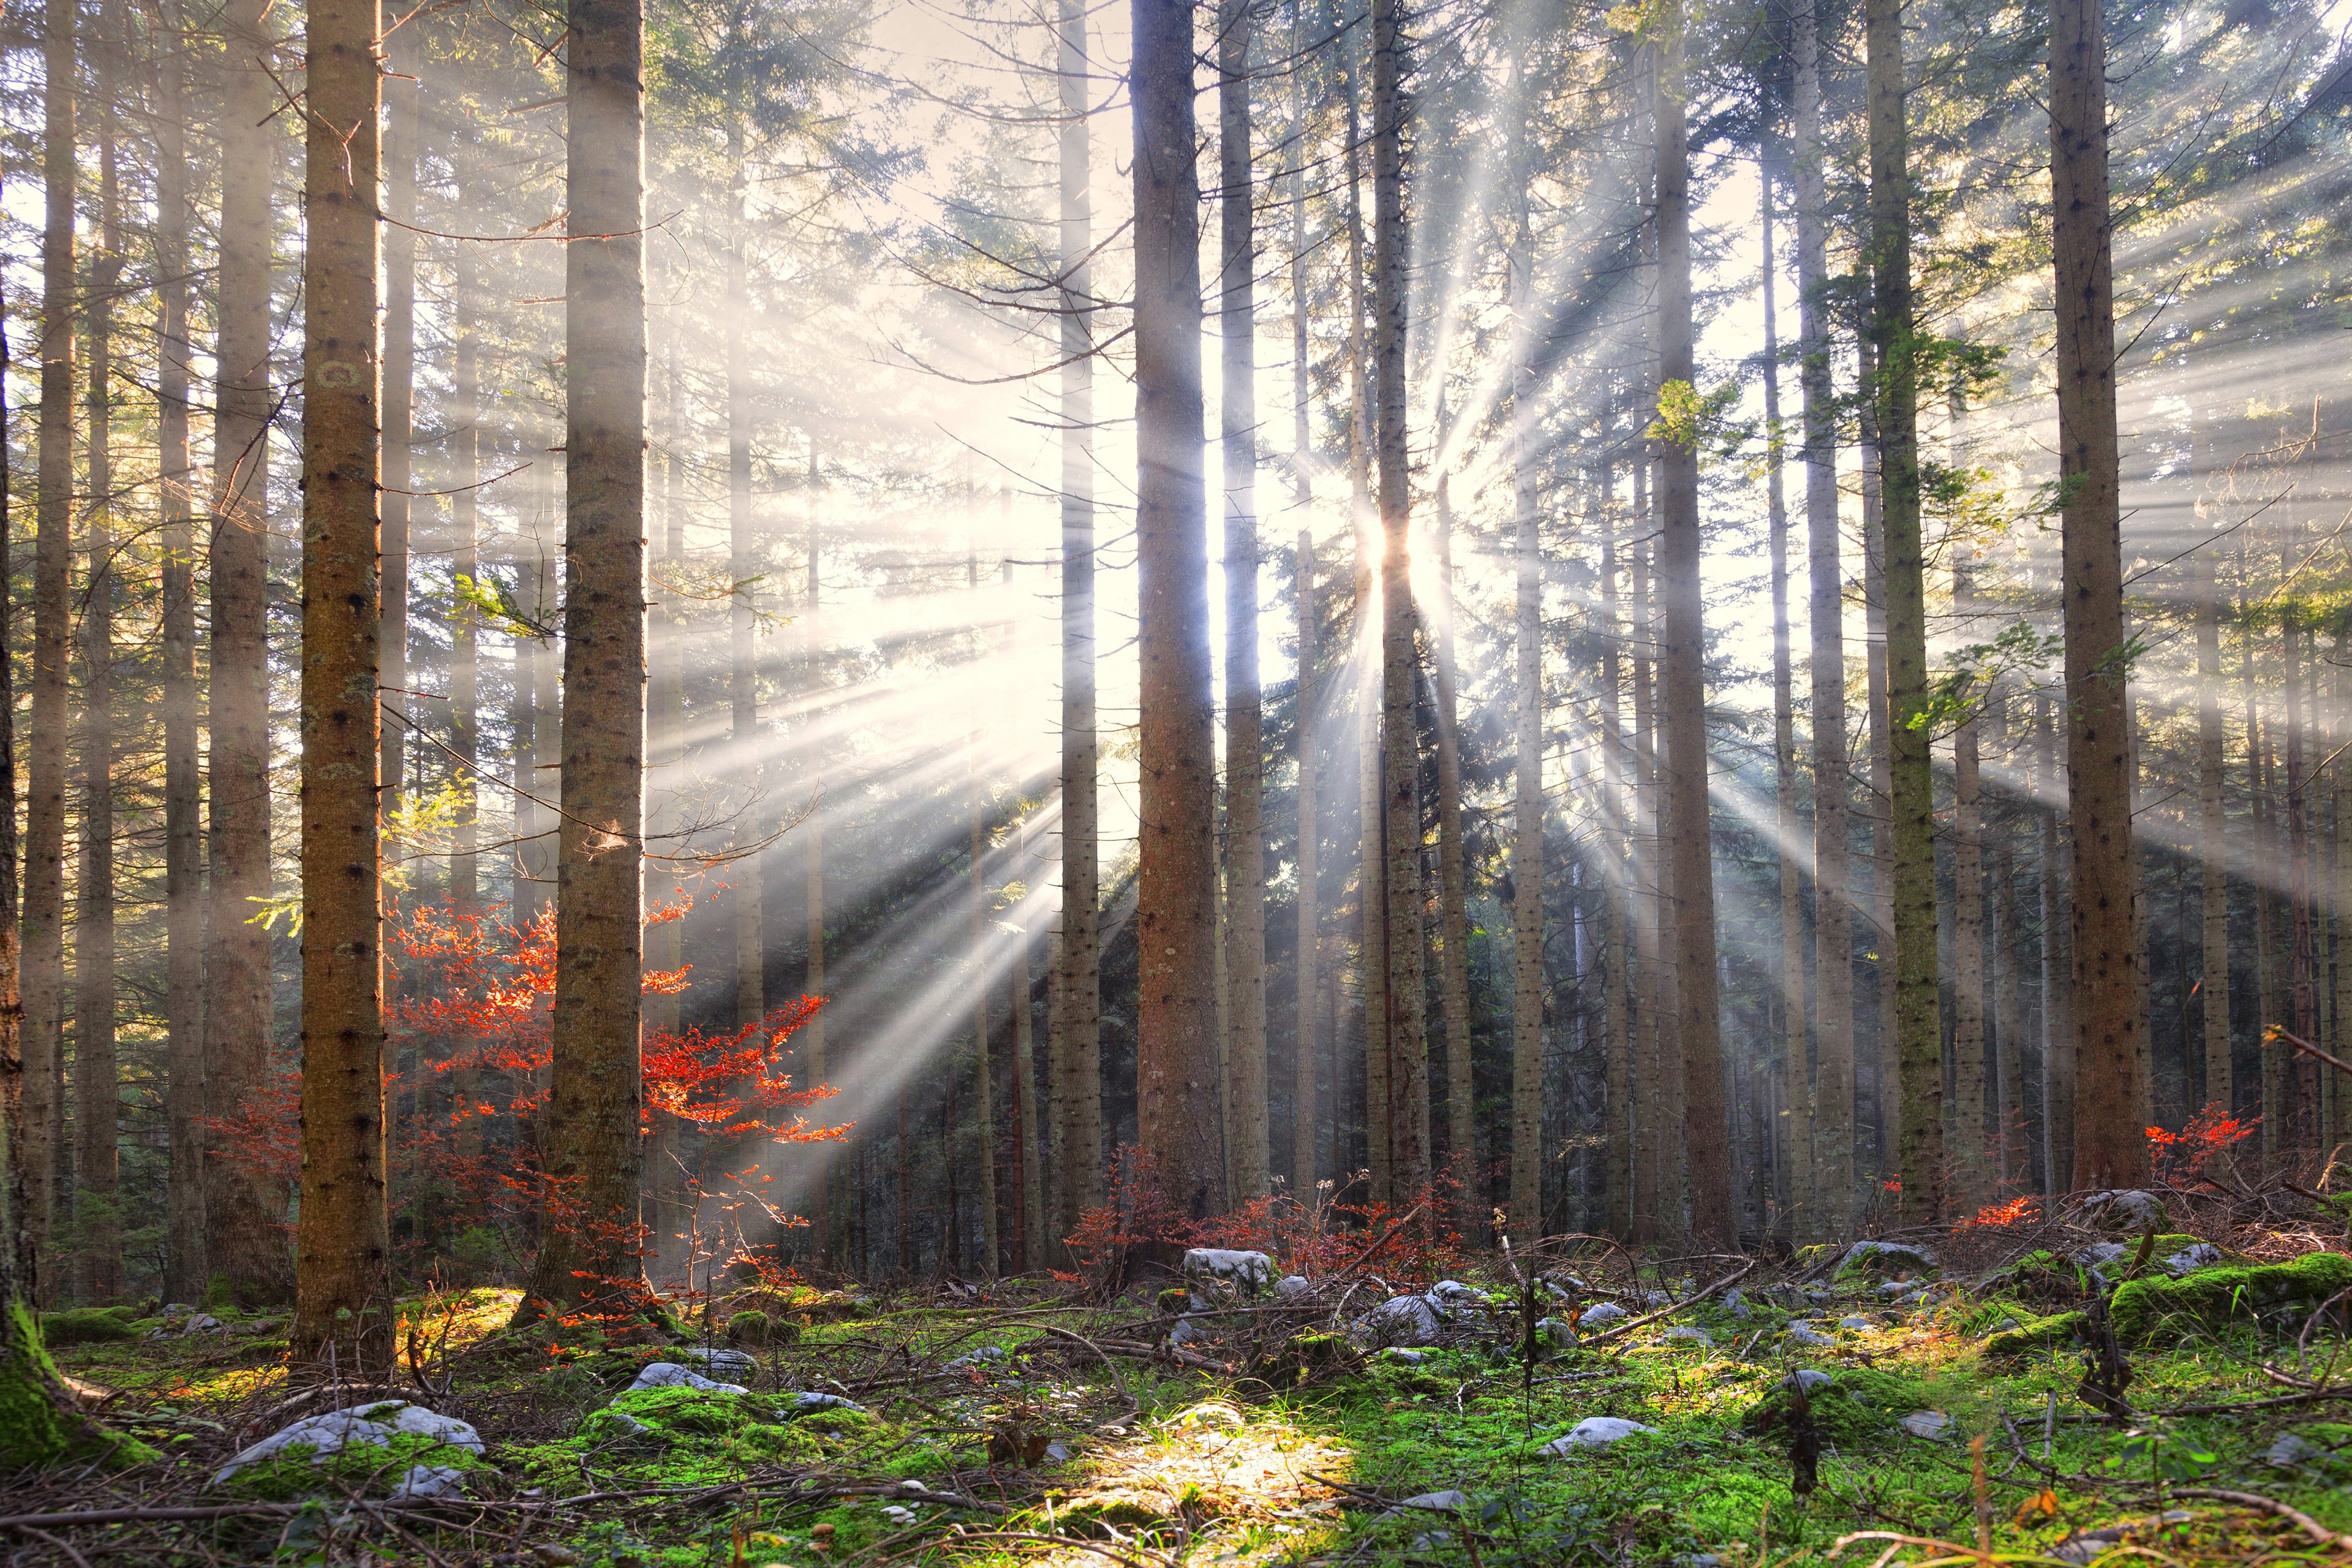 Puun runkoja metsässä, joiden väleistä siivilöityy auringon valoa.